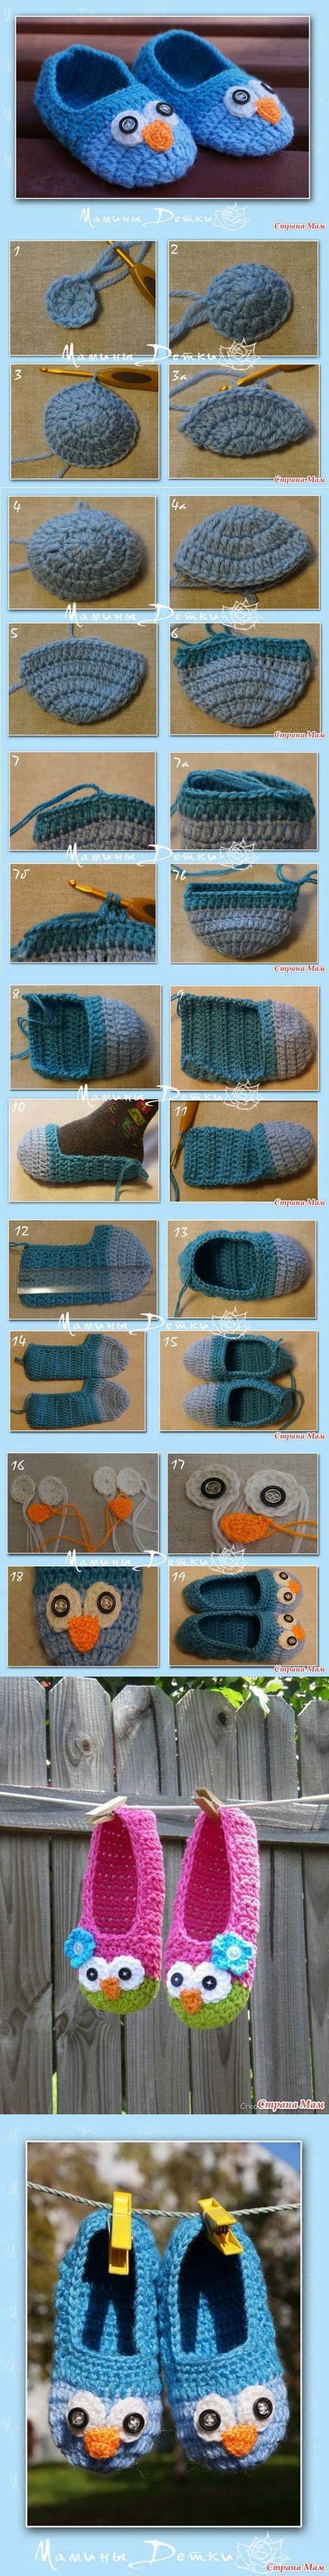 DIY Cute Crochet Owl Slippers for Kids 2